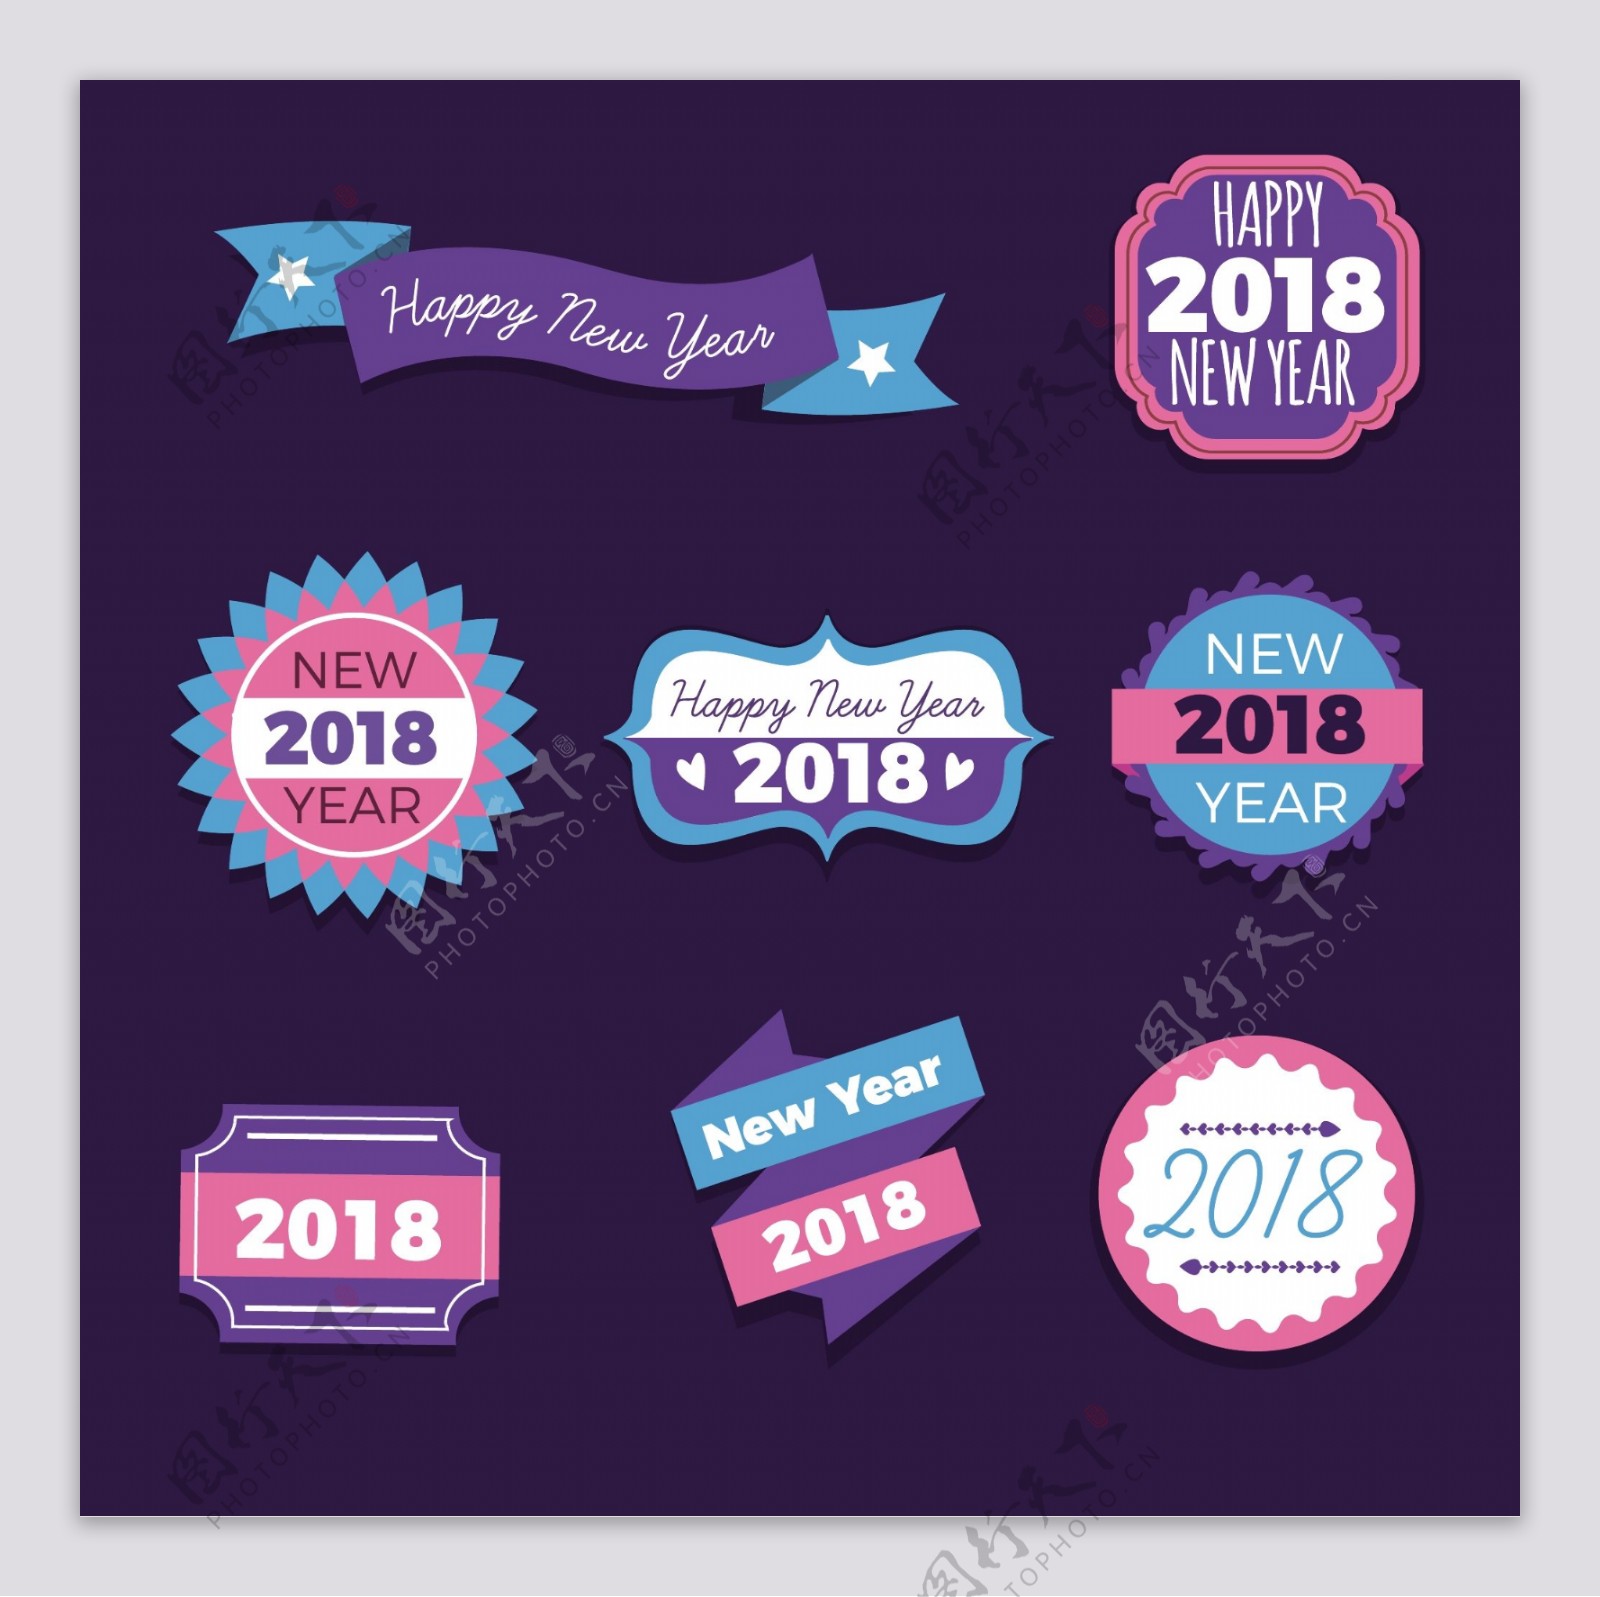 2018新年字体元素设计